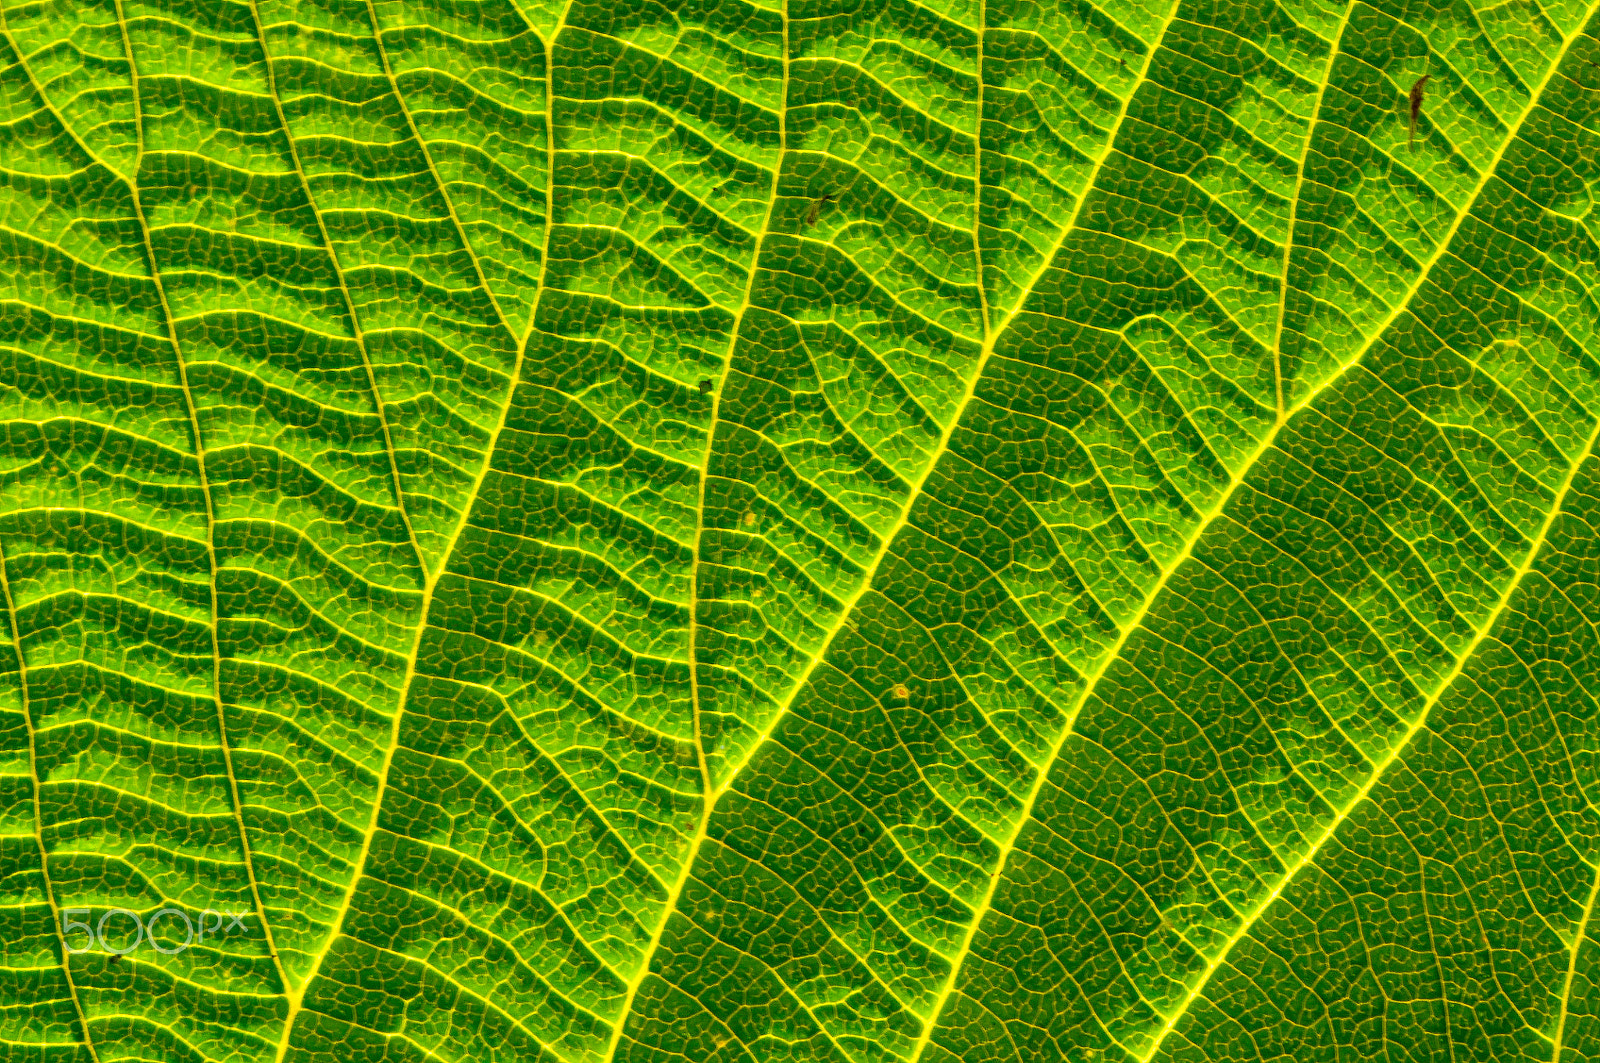 AF Zoom-Nikkor 75-300mm f/4.5-5.6 sample photo. Leaf pattern photography